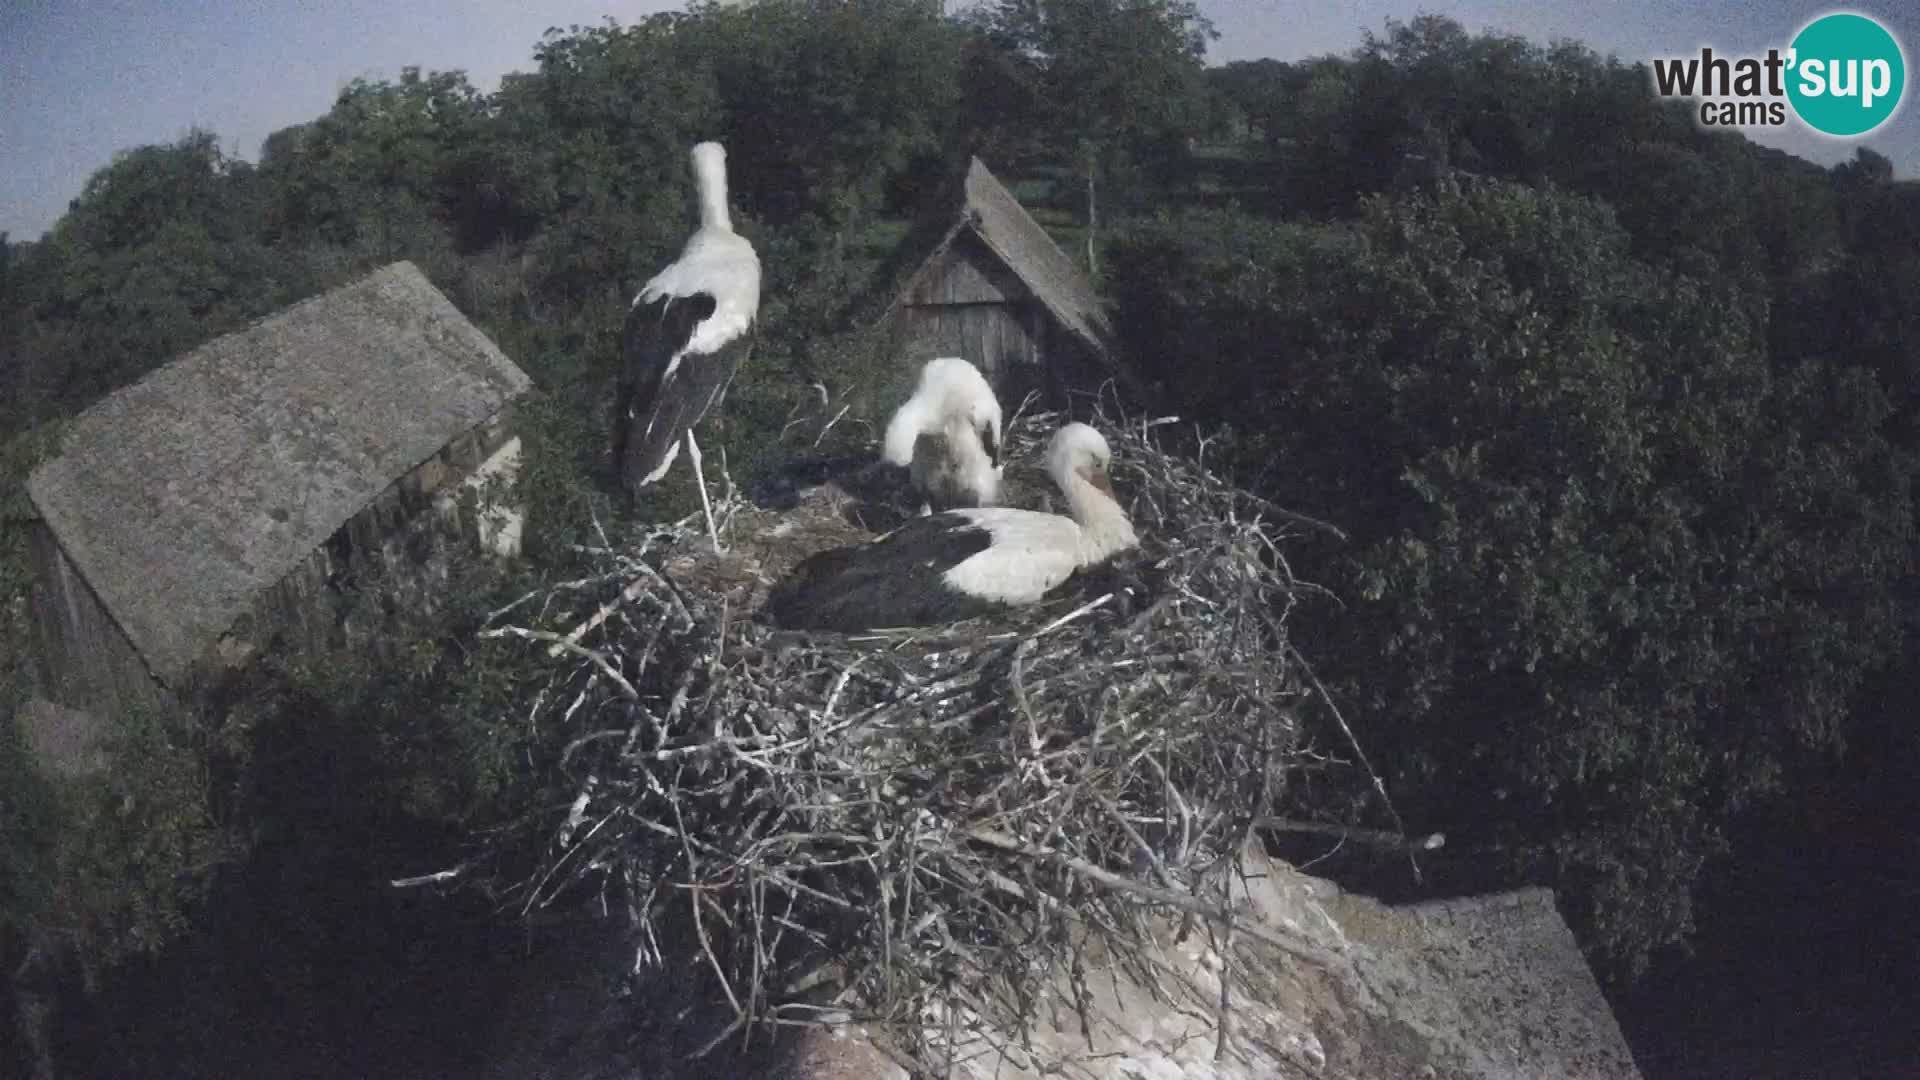 Pueblo europeo de cigüeñas camera en vivo Parque Natural Lonjsko polje